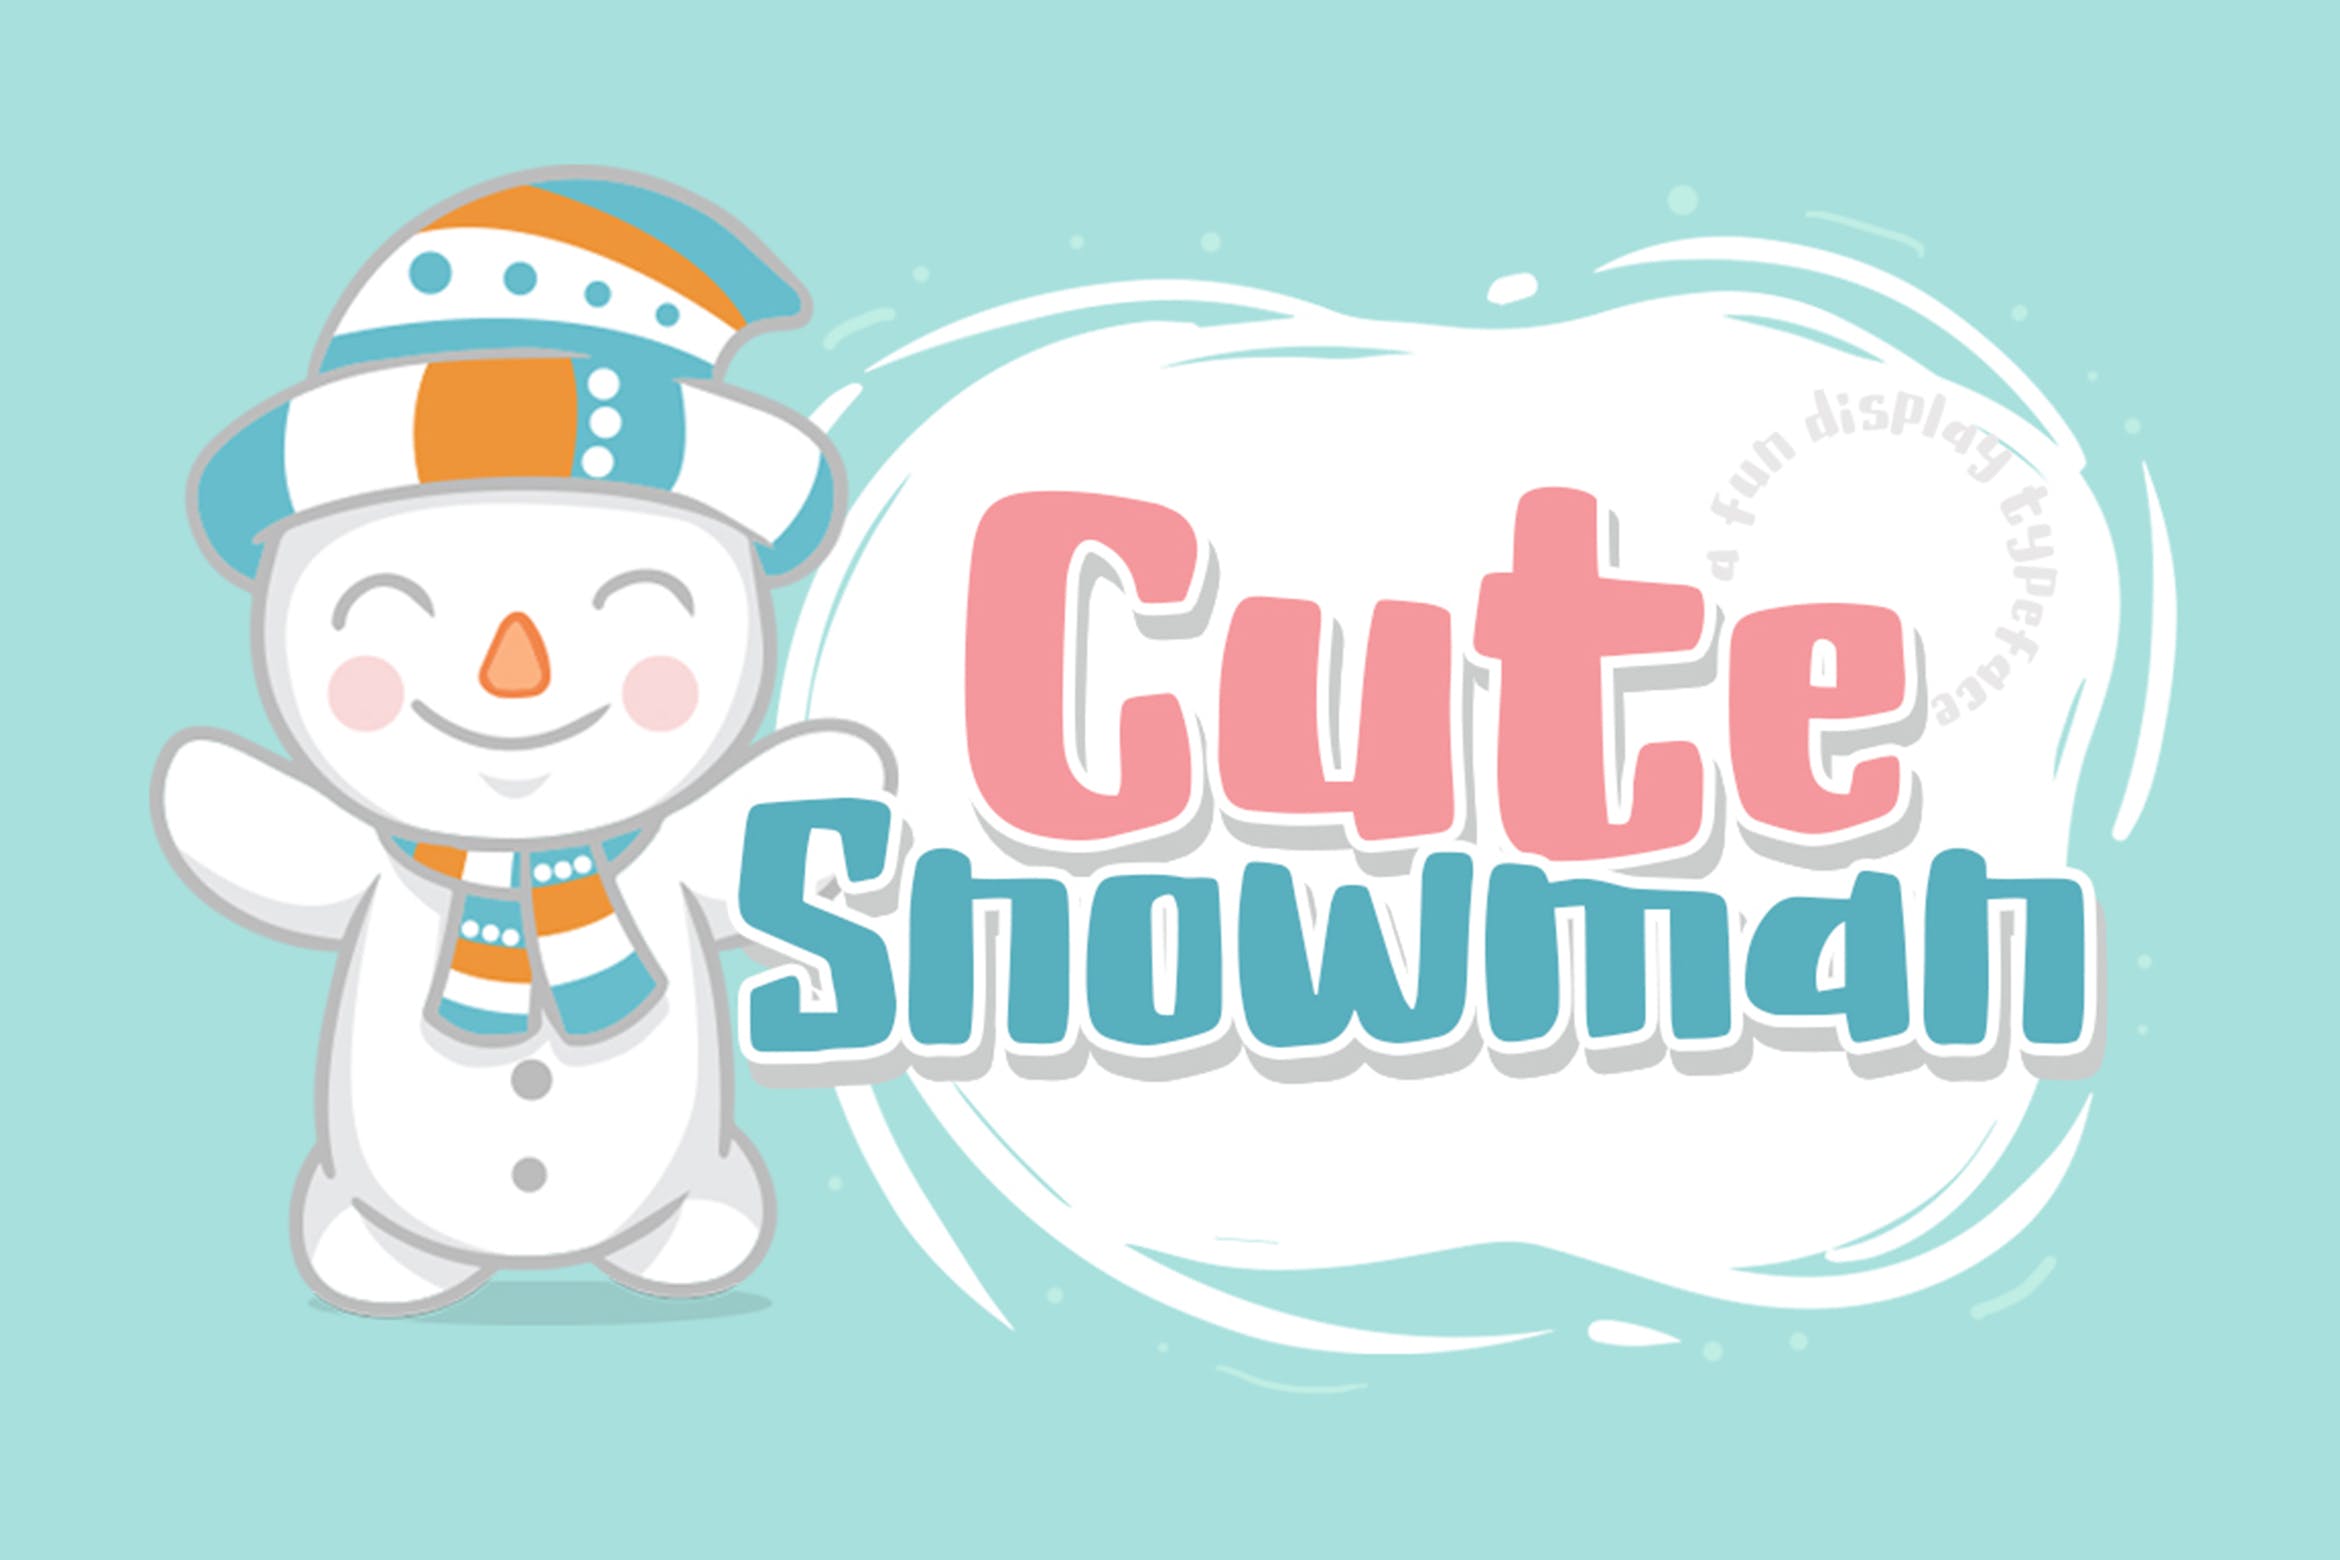 现代清新可爱风格英文手写加粗字体 Cute Snowman插图